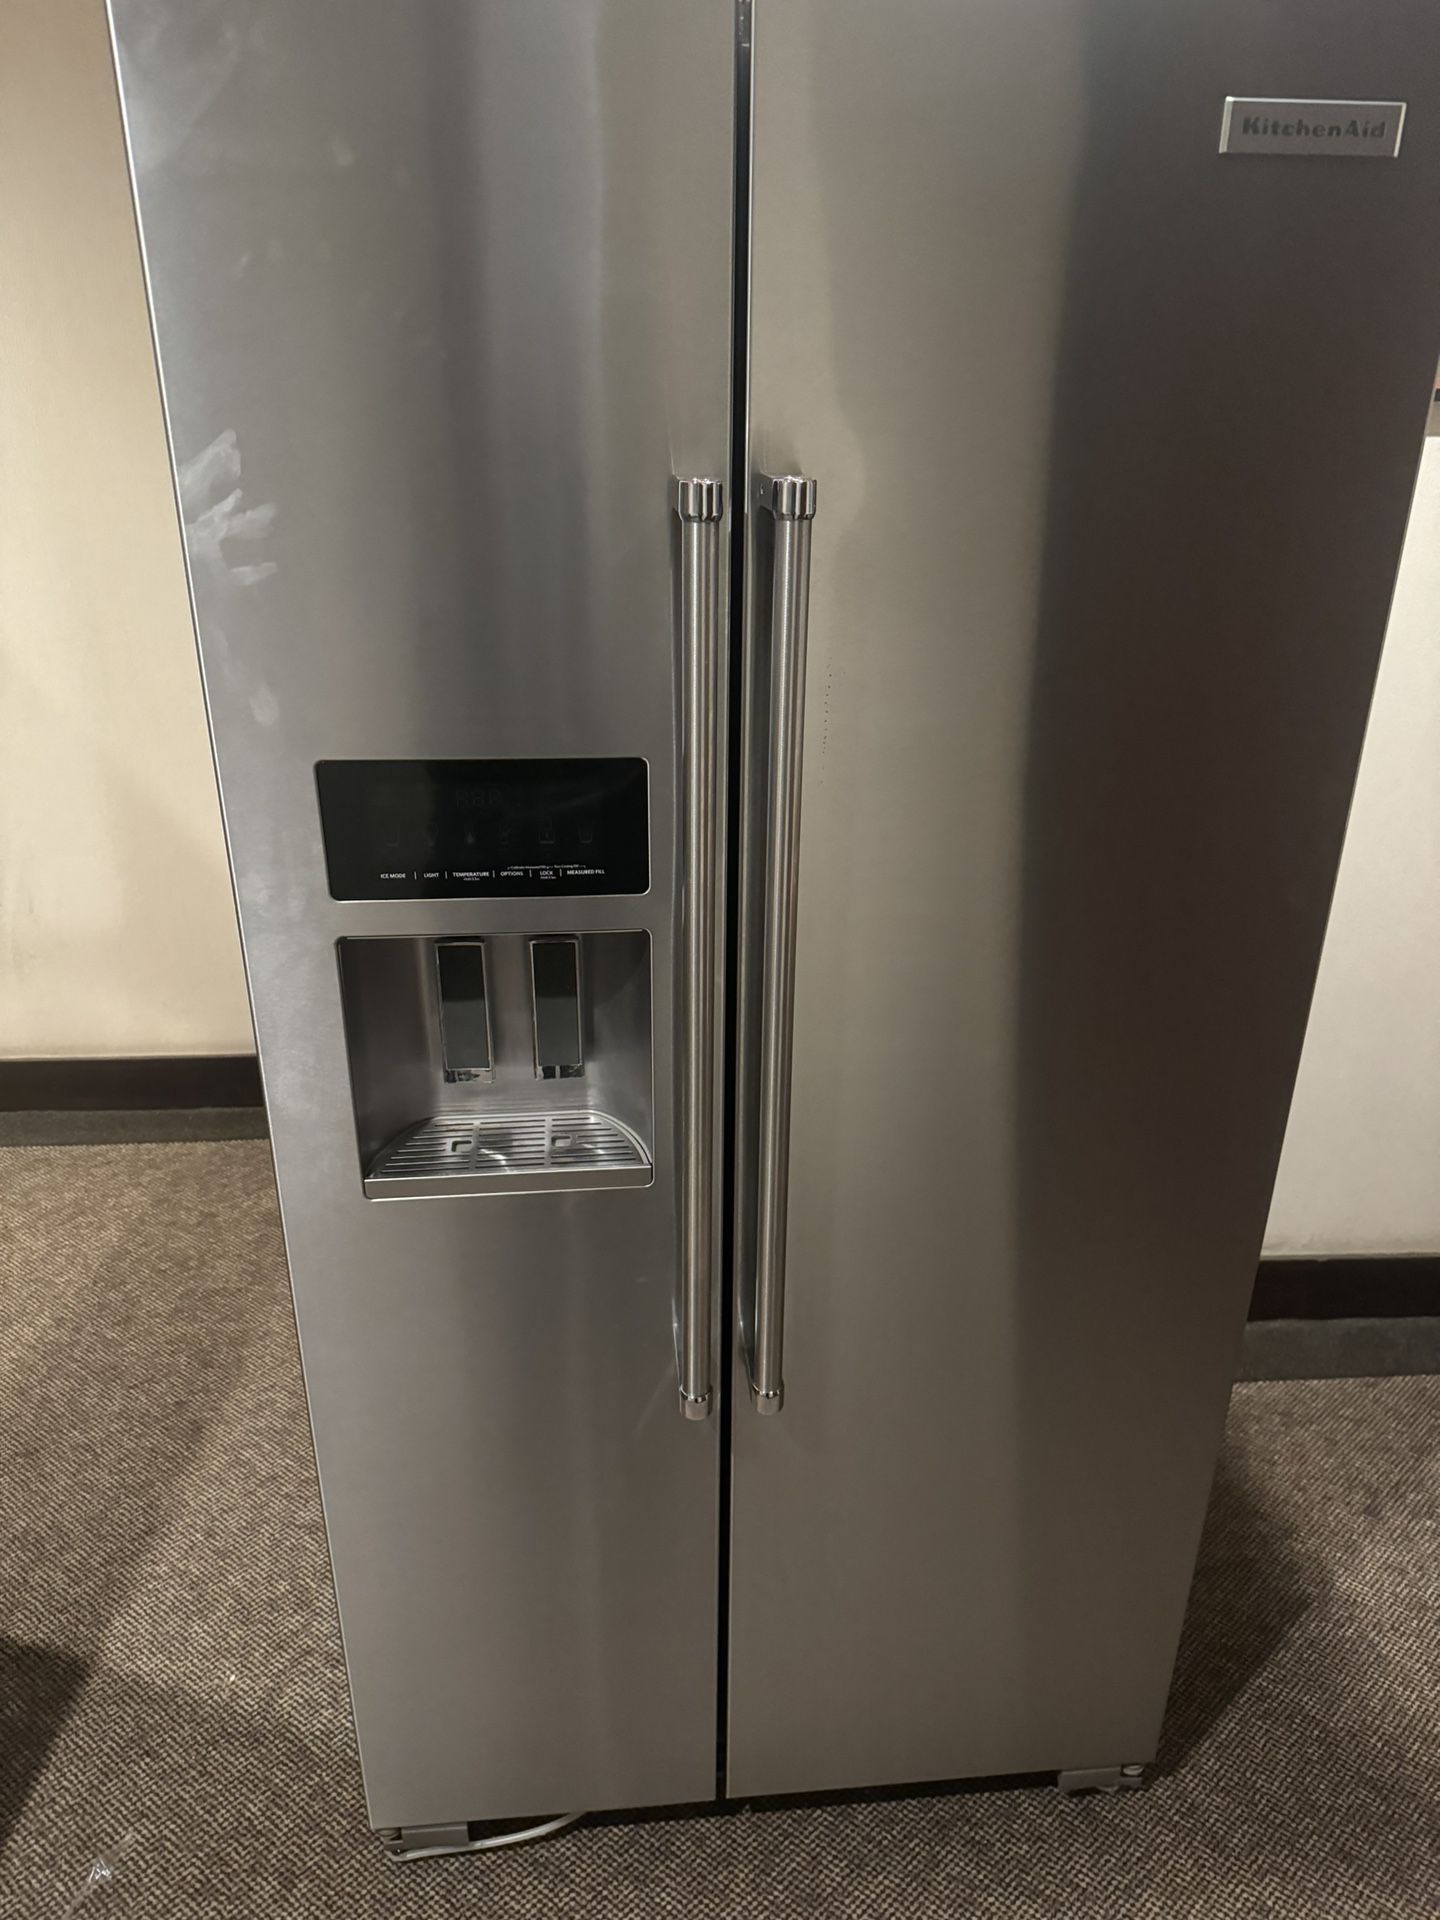   Refrigerator 